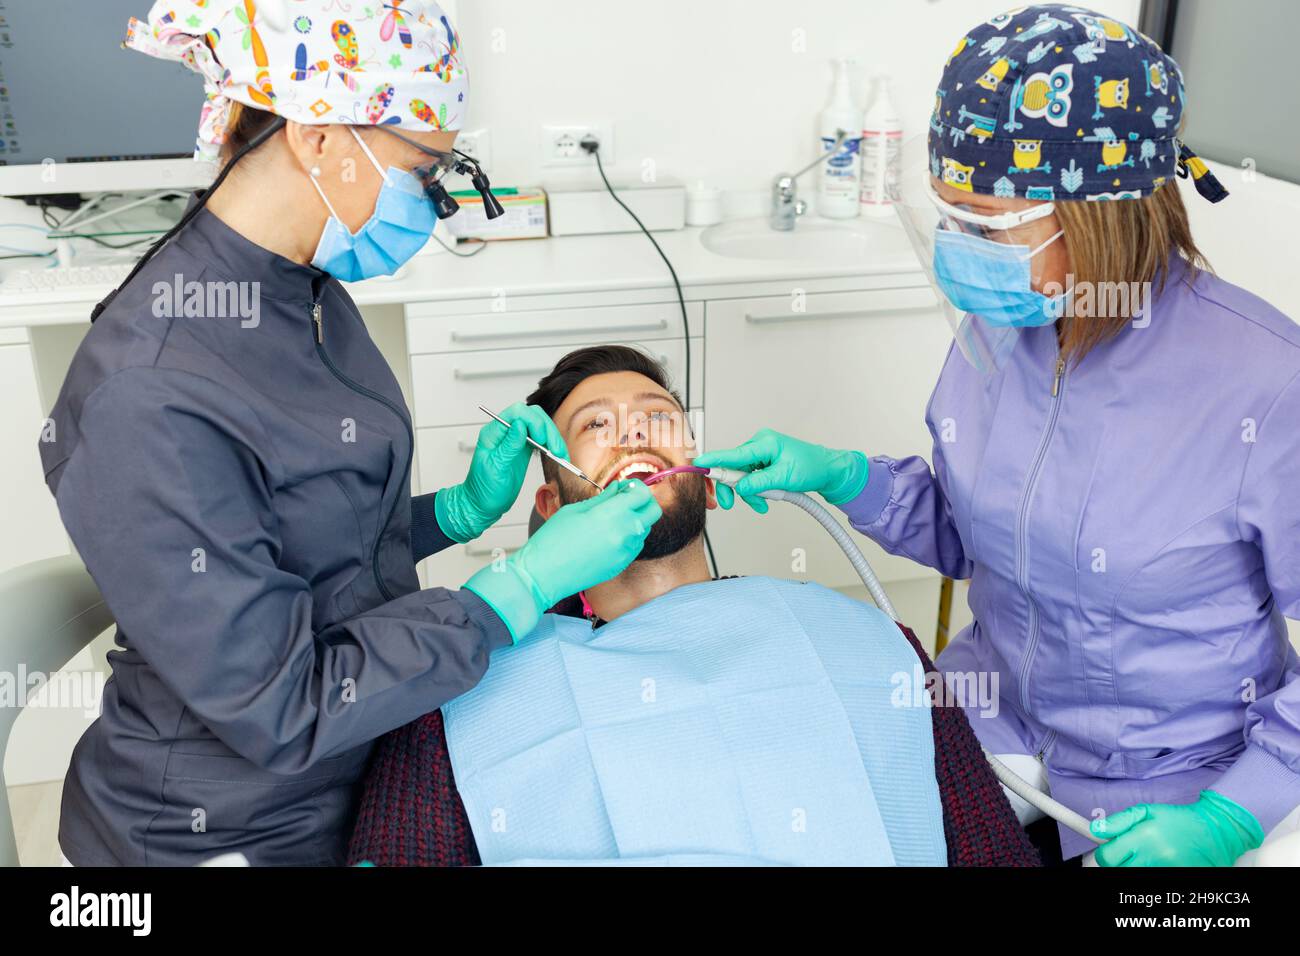 Dentista femenino examina a un paciente hombre en un consultorio dental usando herramientas profesionales y equipo de protección personal. Foto de stock